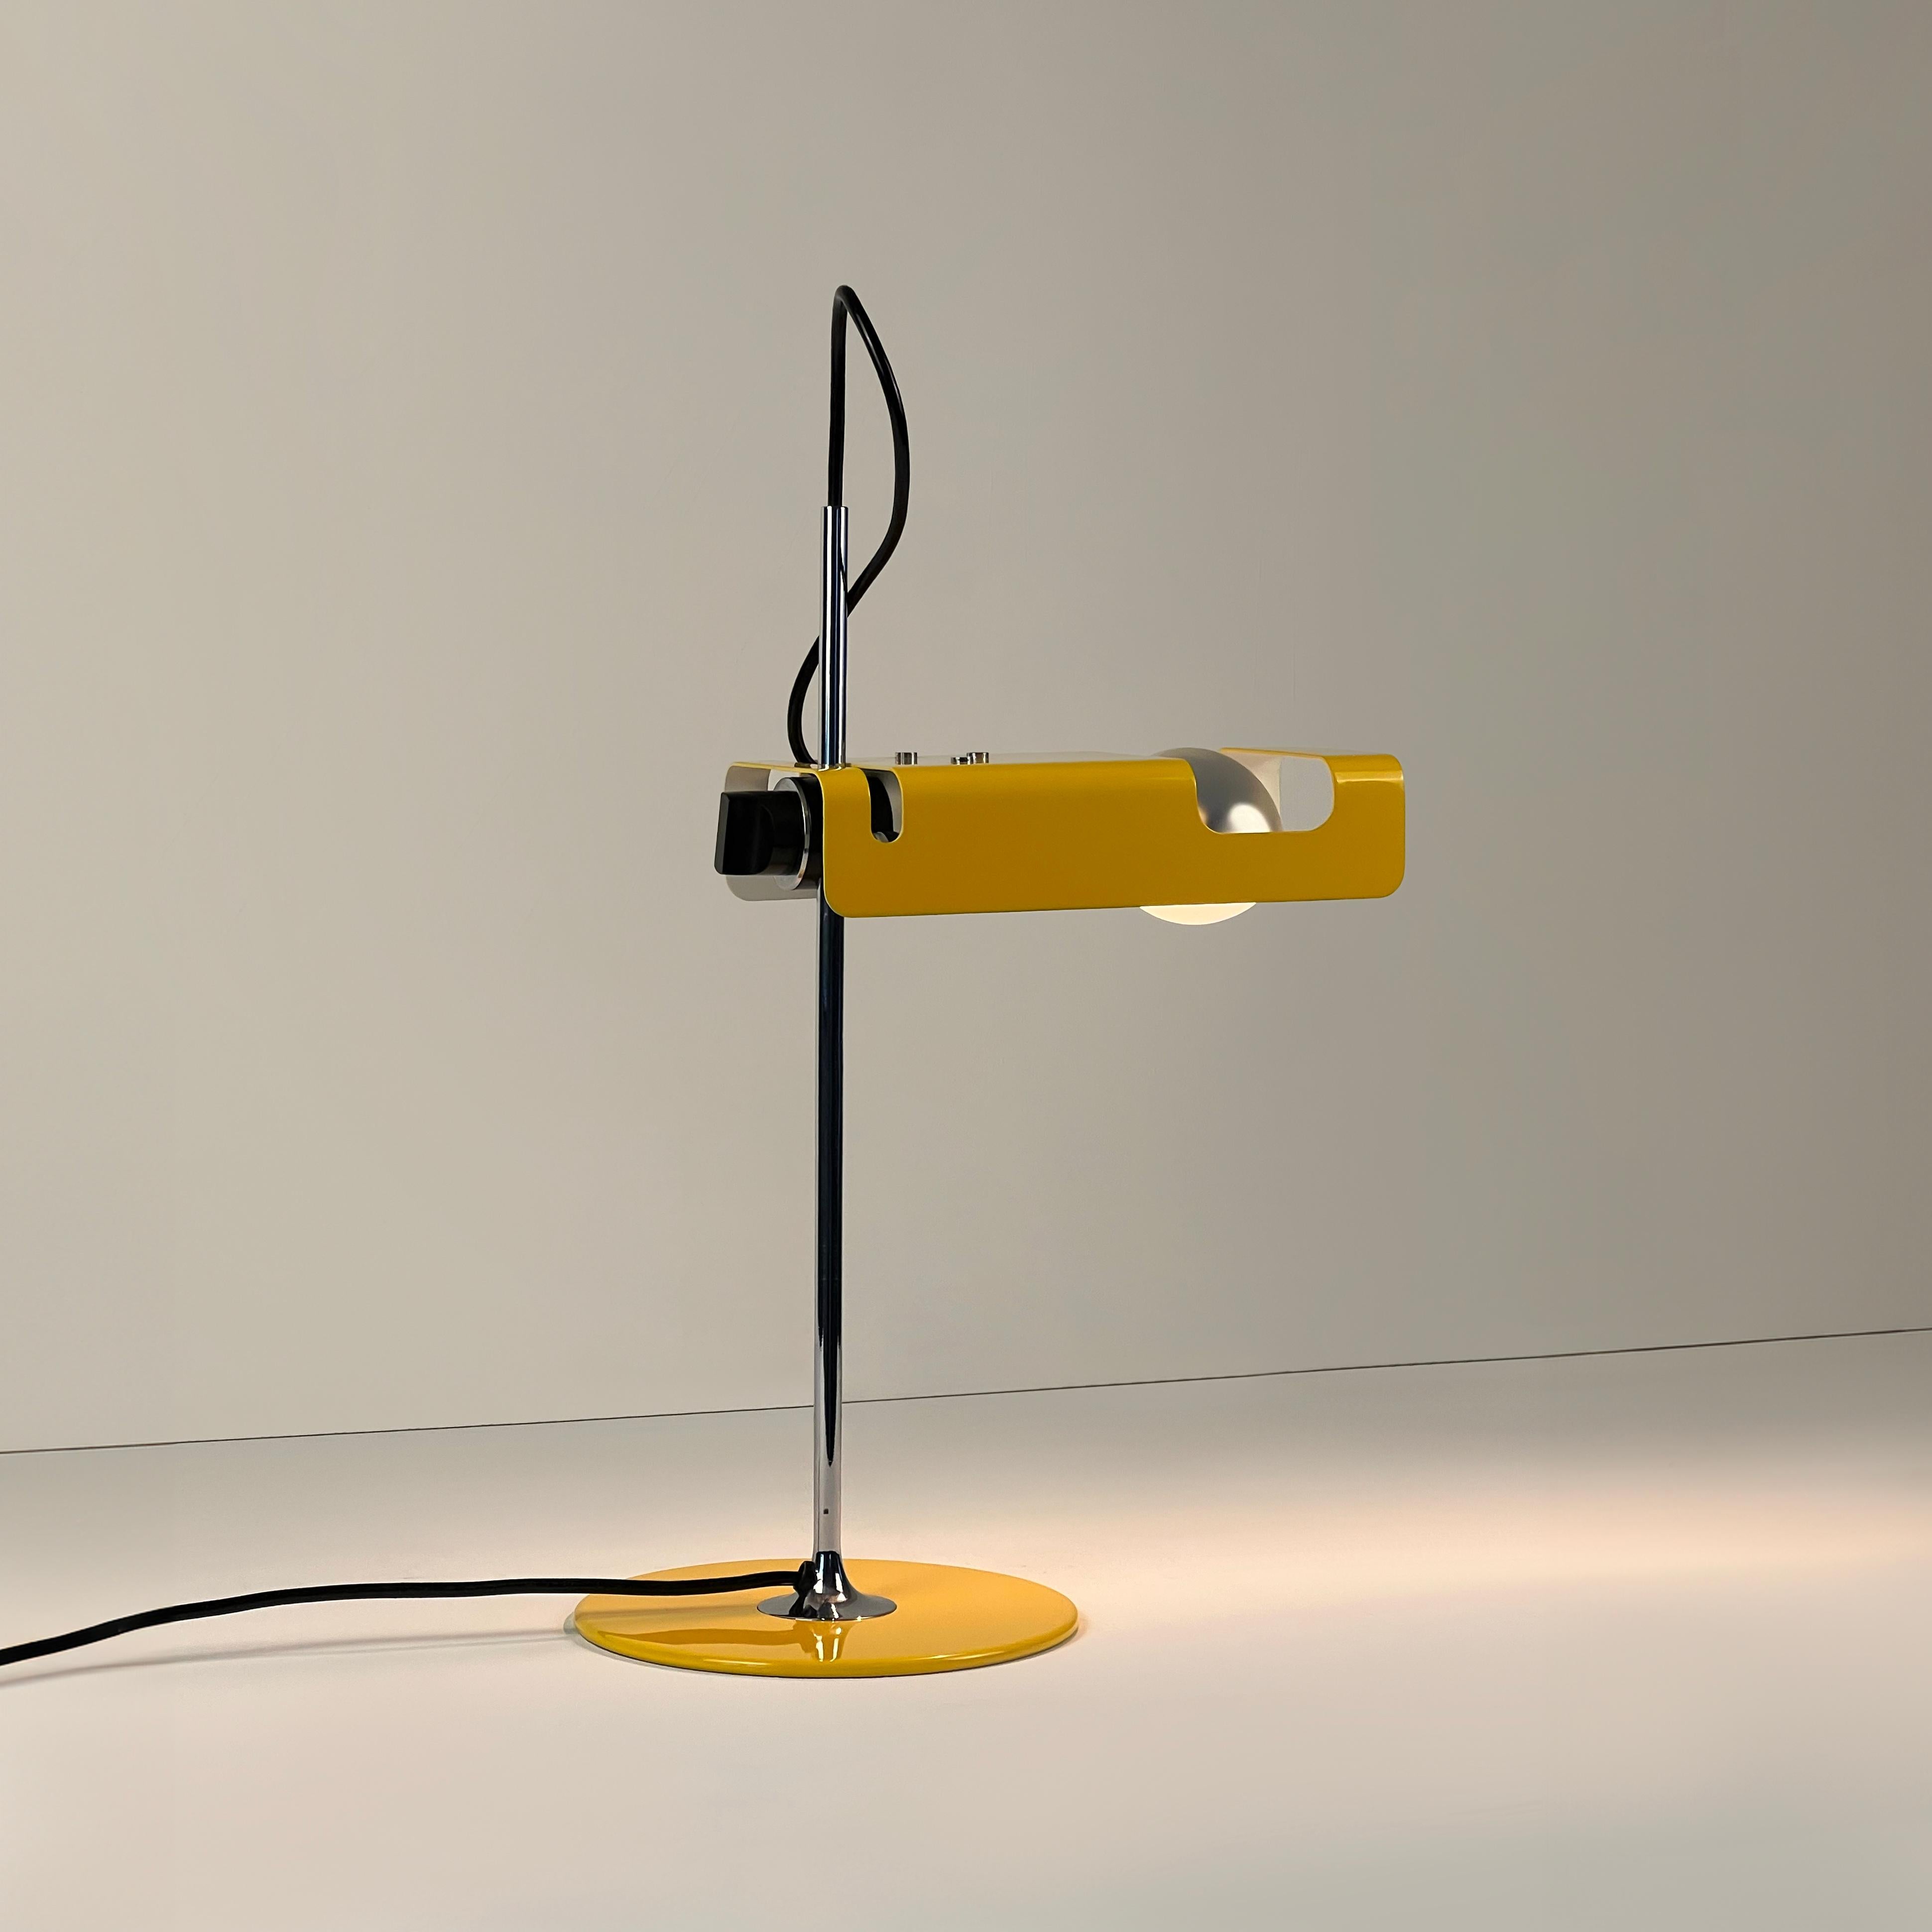 Lampe de table araignée conçue par Joe Colombo pour Oluce, 1ère édition. Italie, 1965.

Voici une première édition présentant la version originale de la baïonnette B22 et disponible dans la rare couleur jaune.

Artistics en métal laqué jaune et en